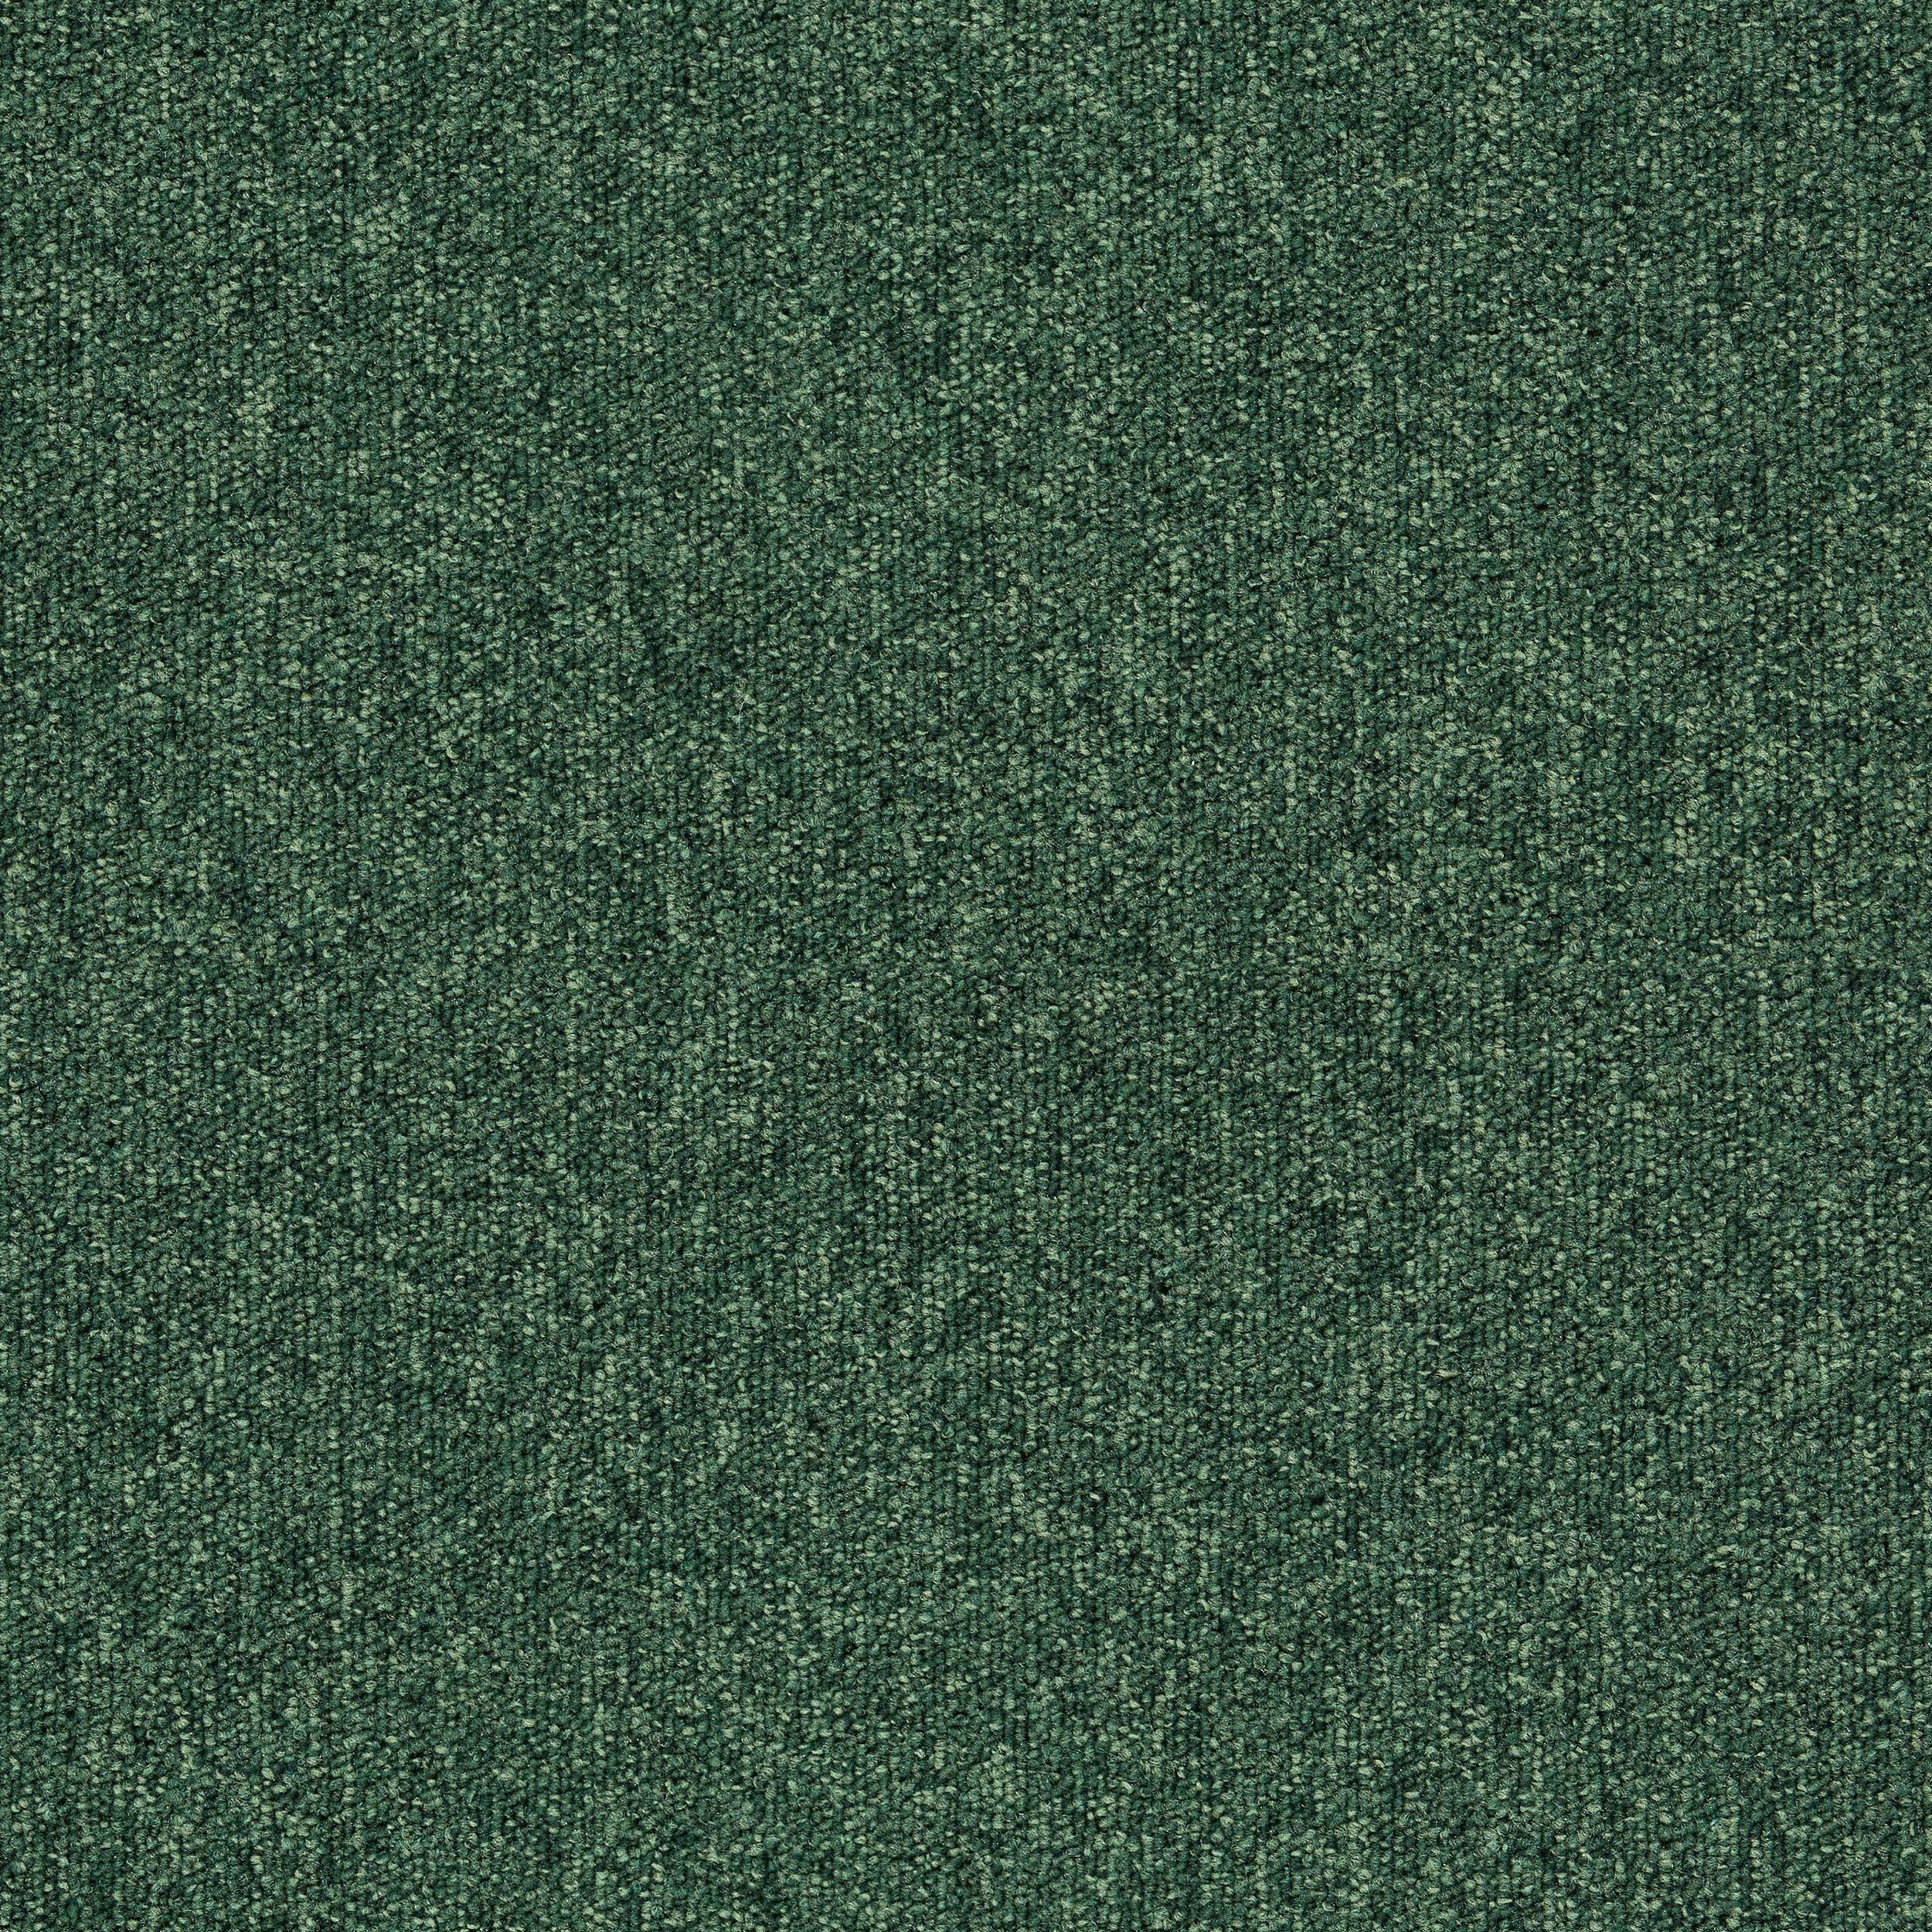 Heuga 727 Carpet Tile In Bottle Green afbeeldingnummer 8